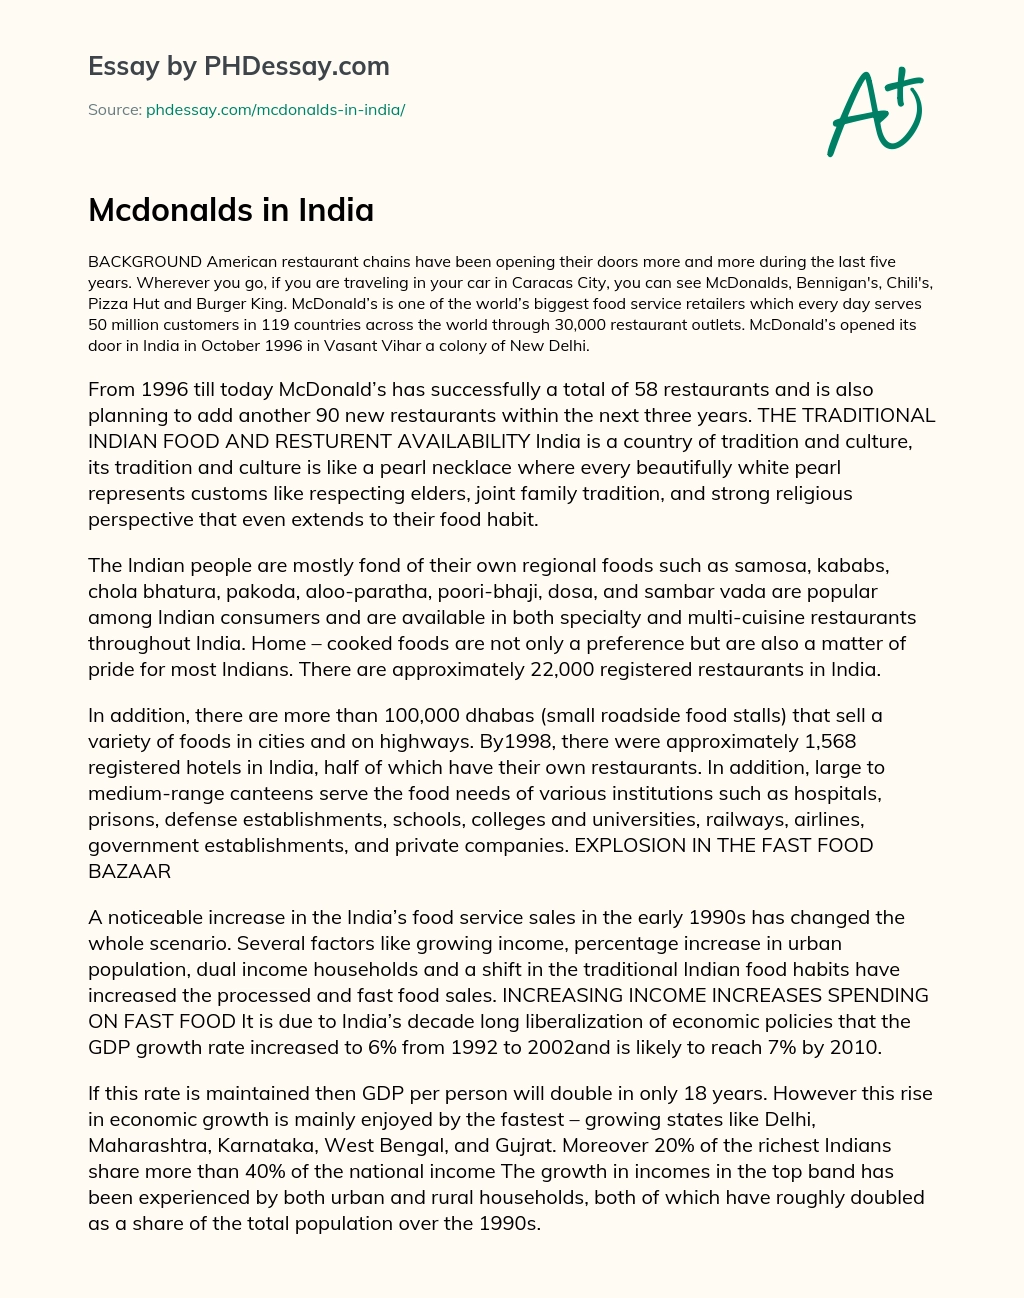 Mcdonalds in India essay